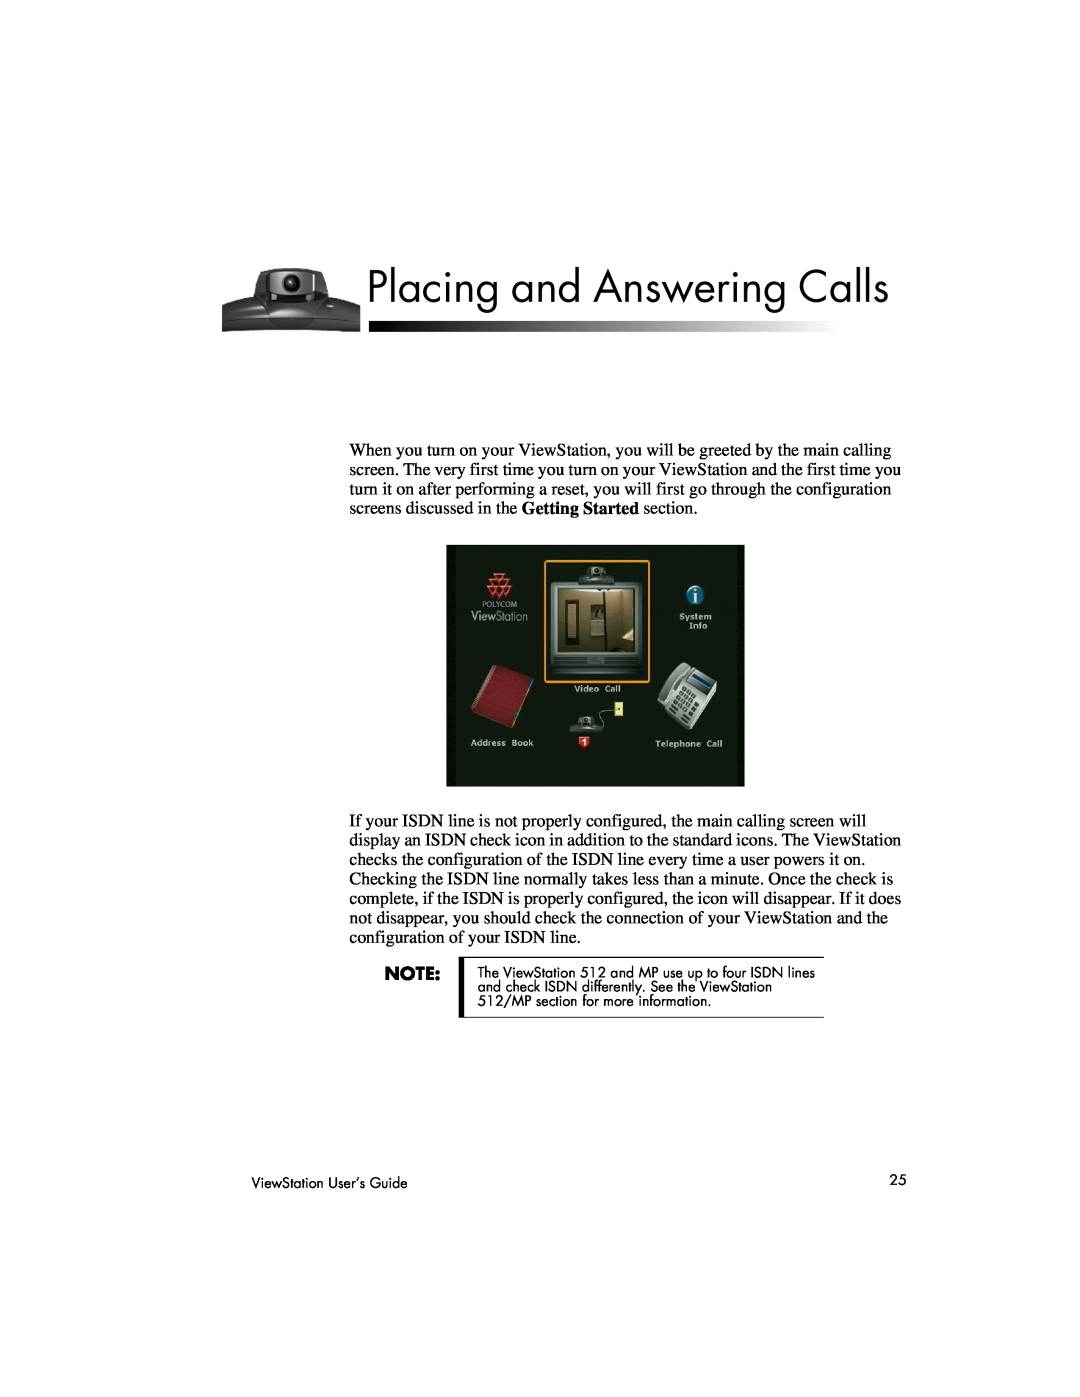 Polycom 512, 128, MP manual Placing and Answering Calls 